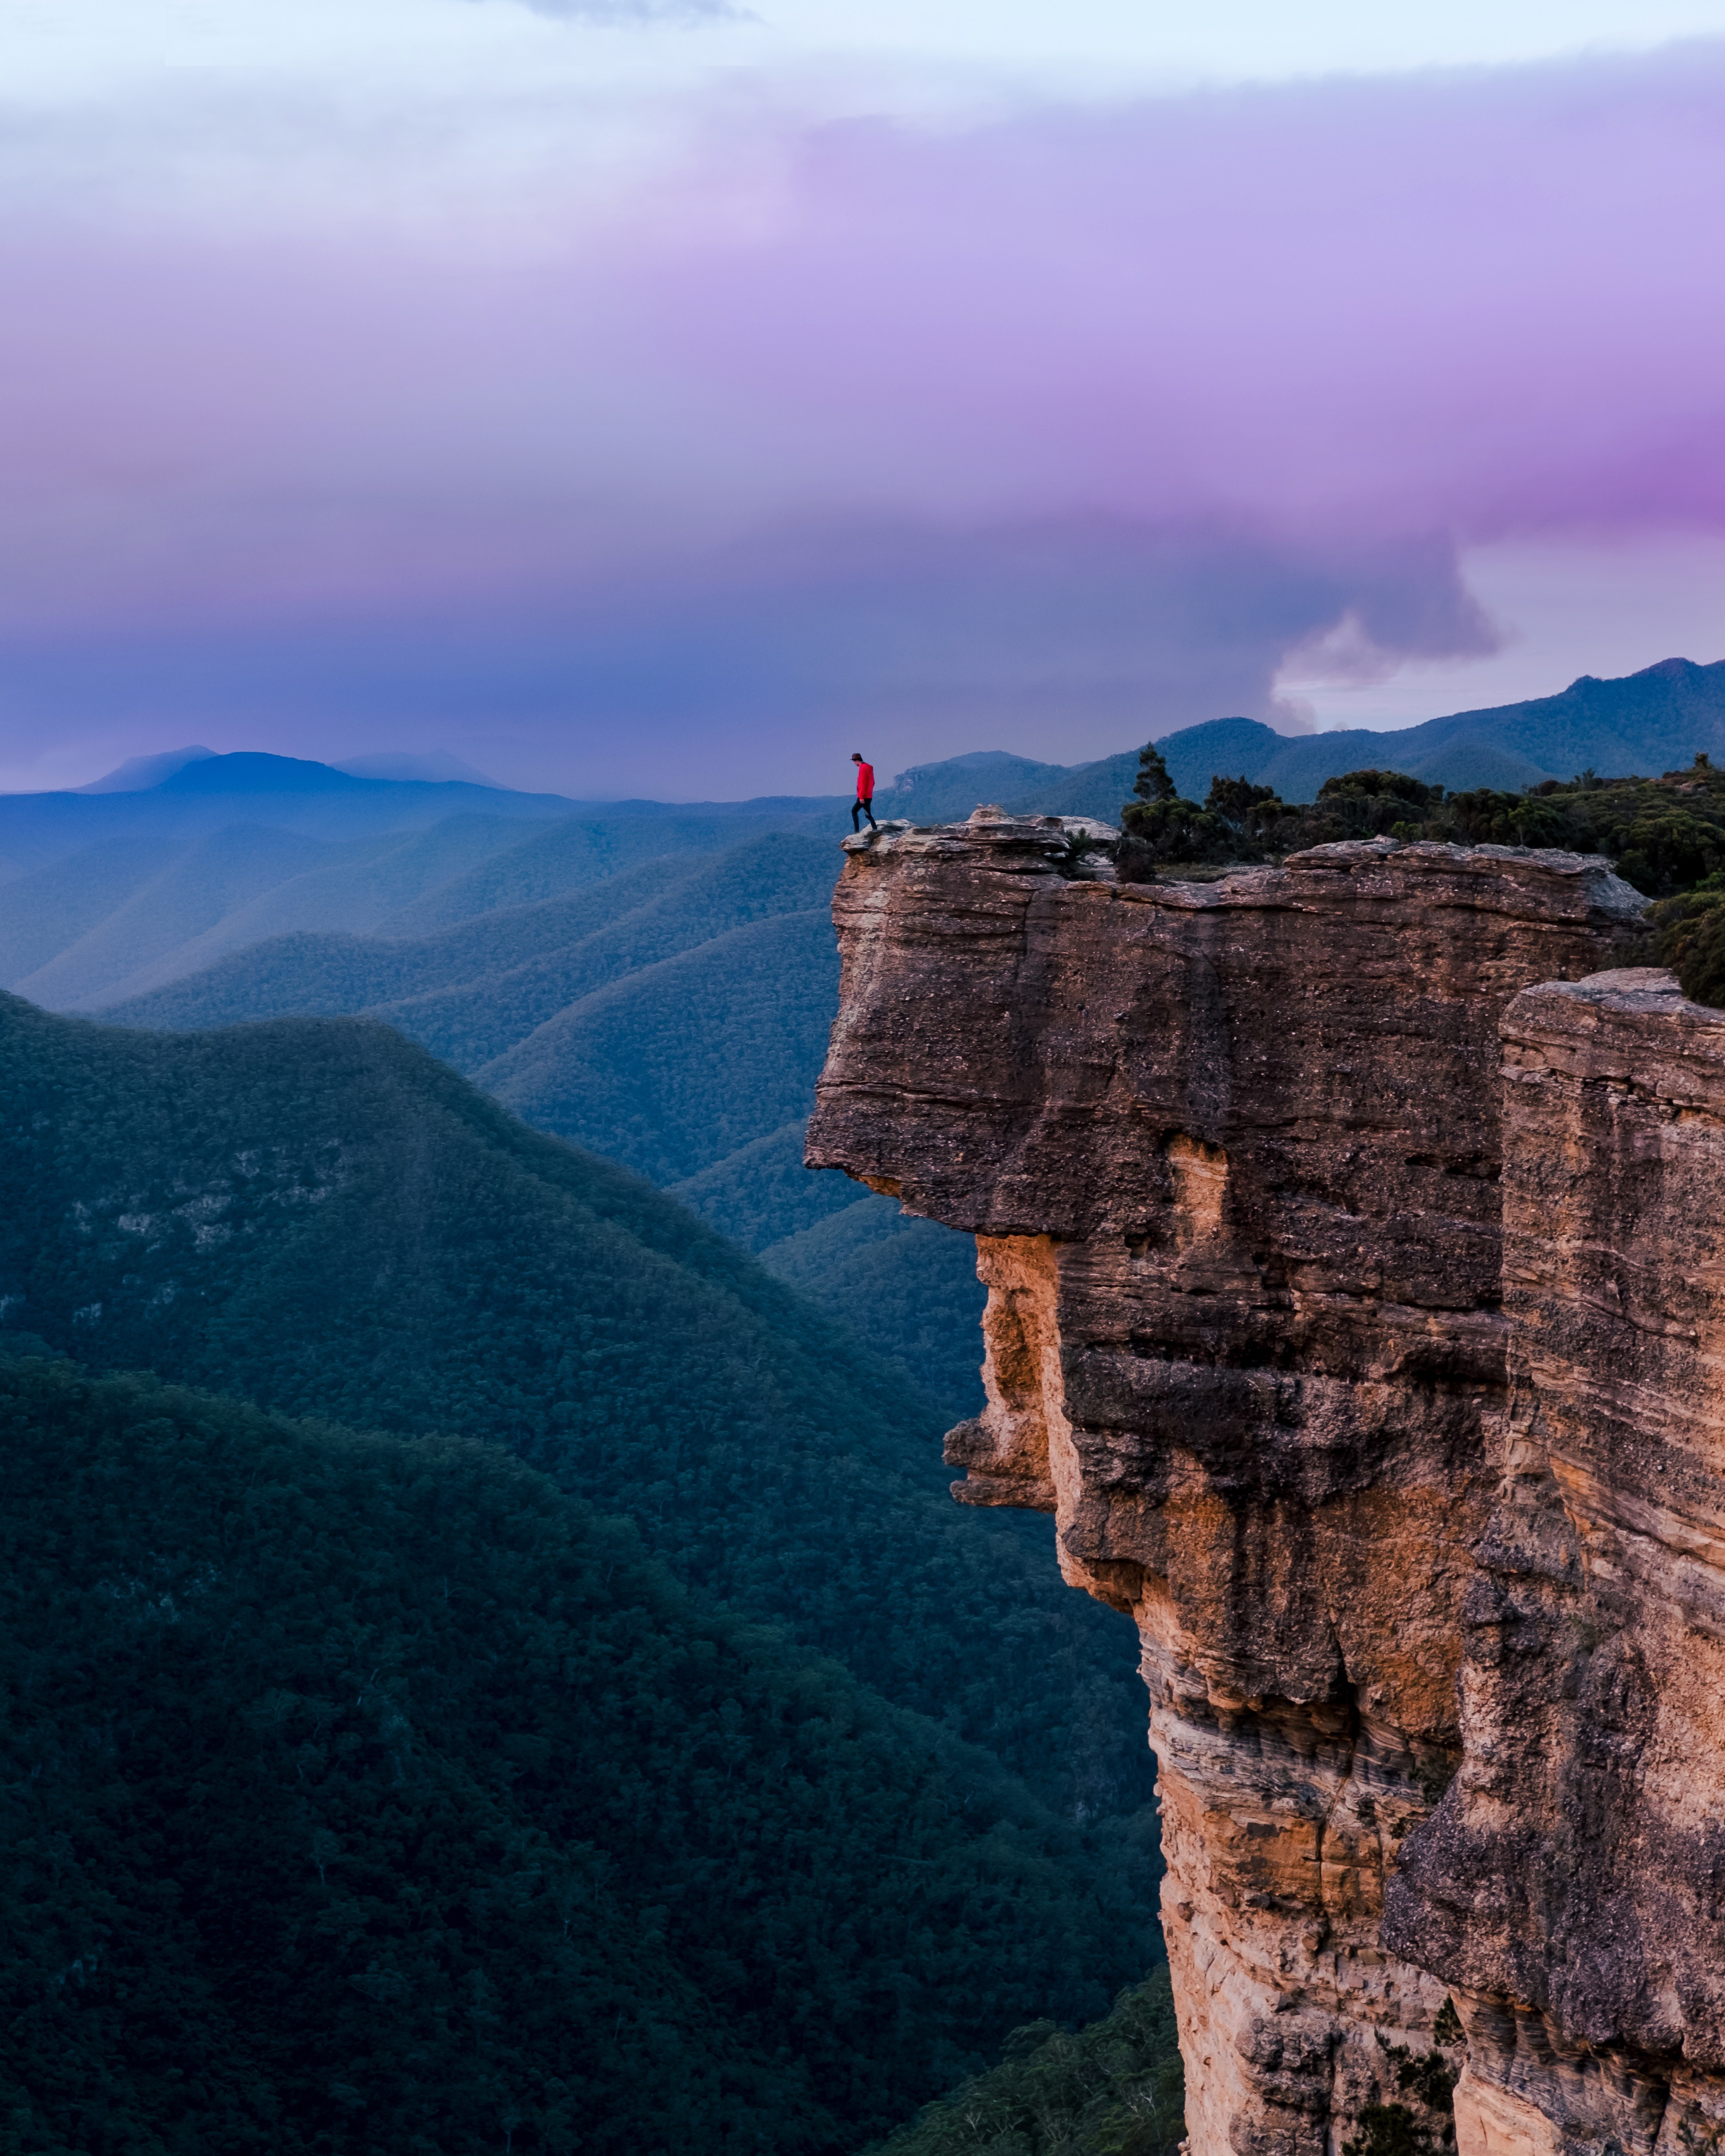 sydney, australia, loneliness, precipice, break, nature, cliff, human, person